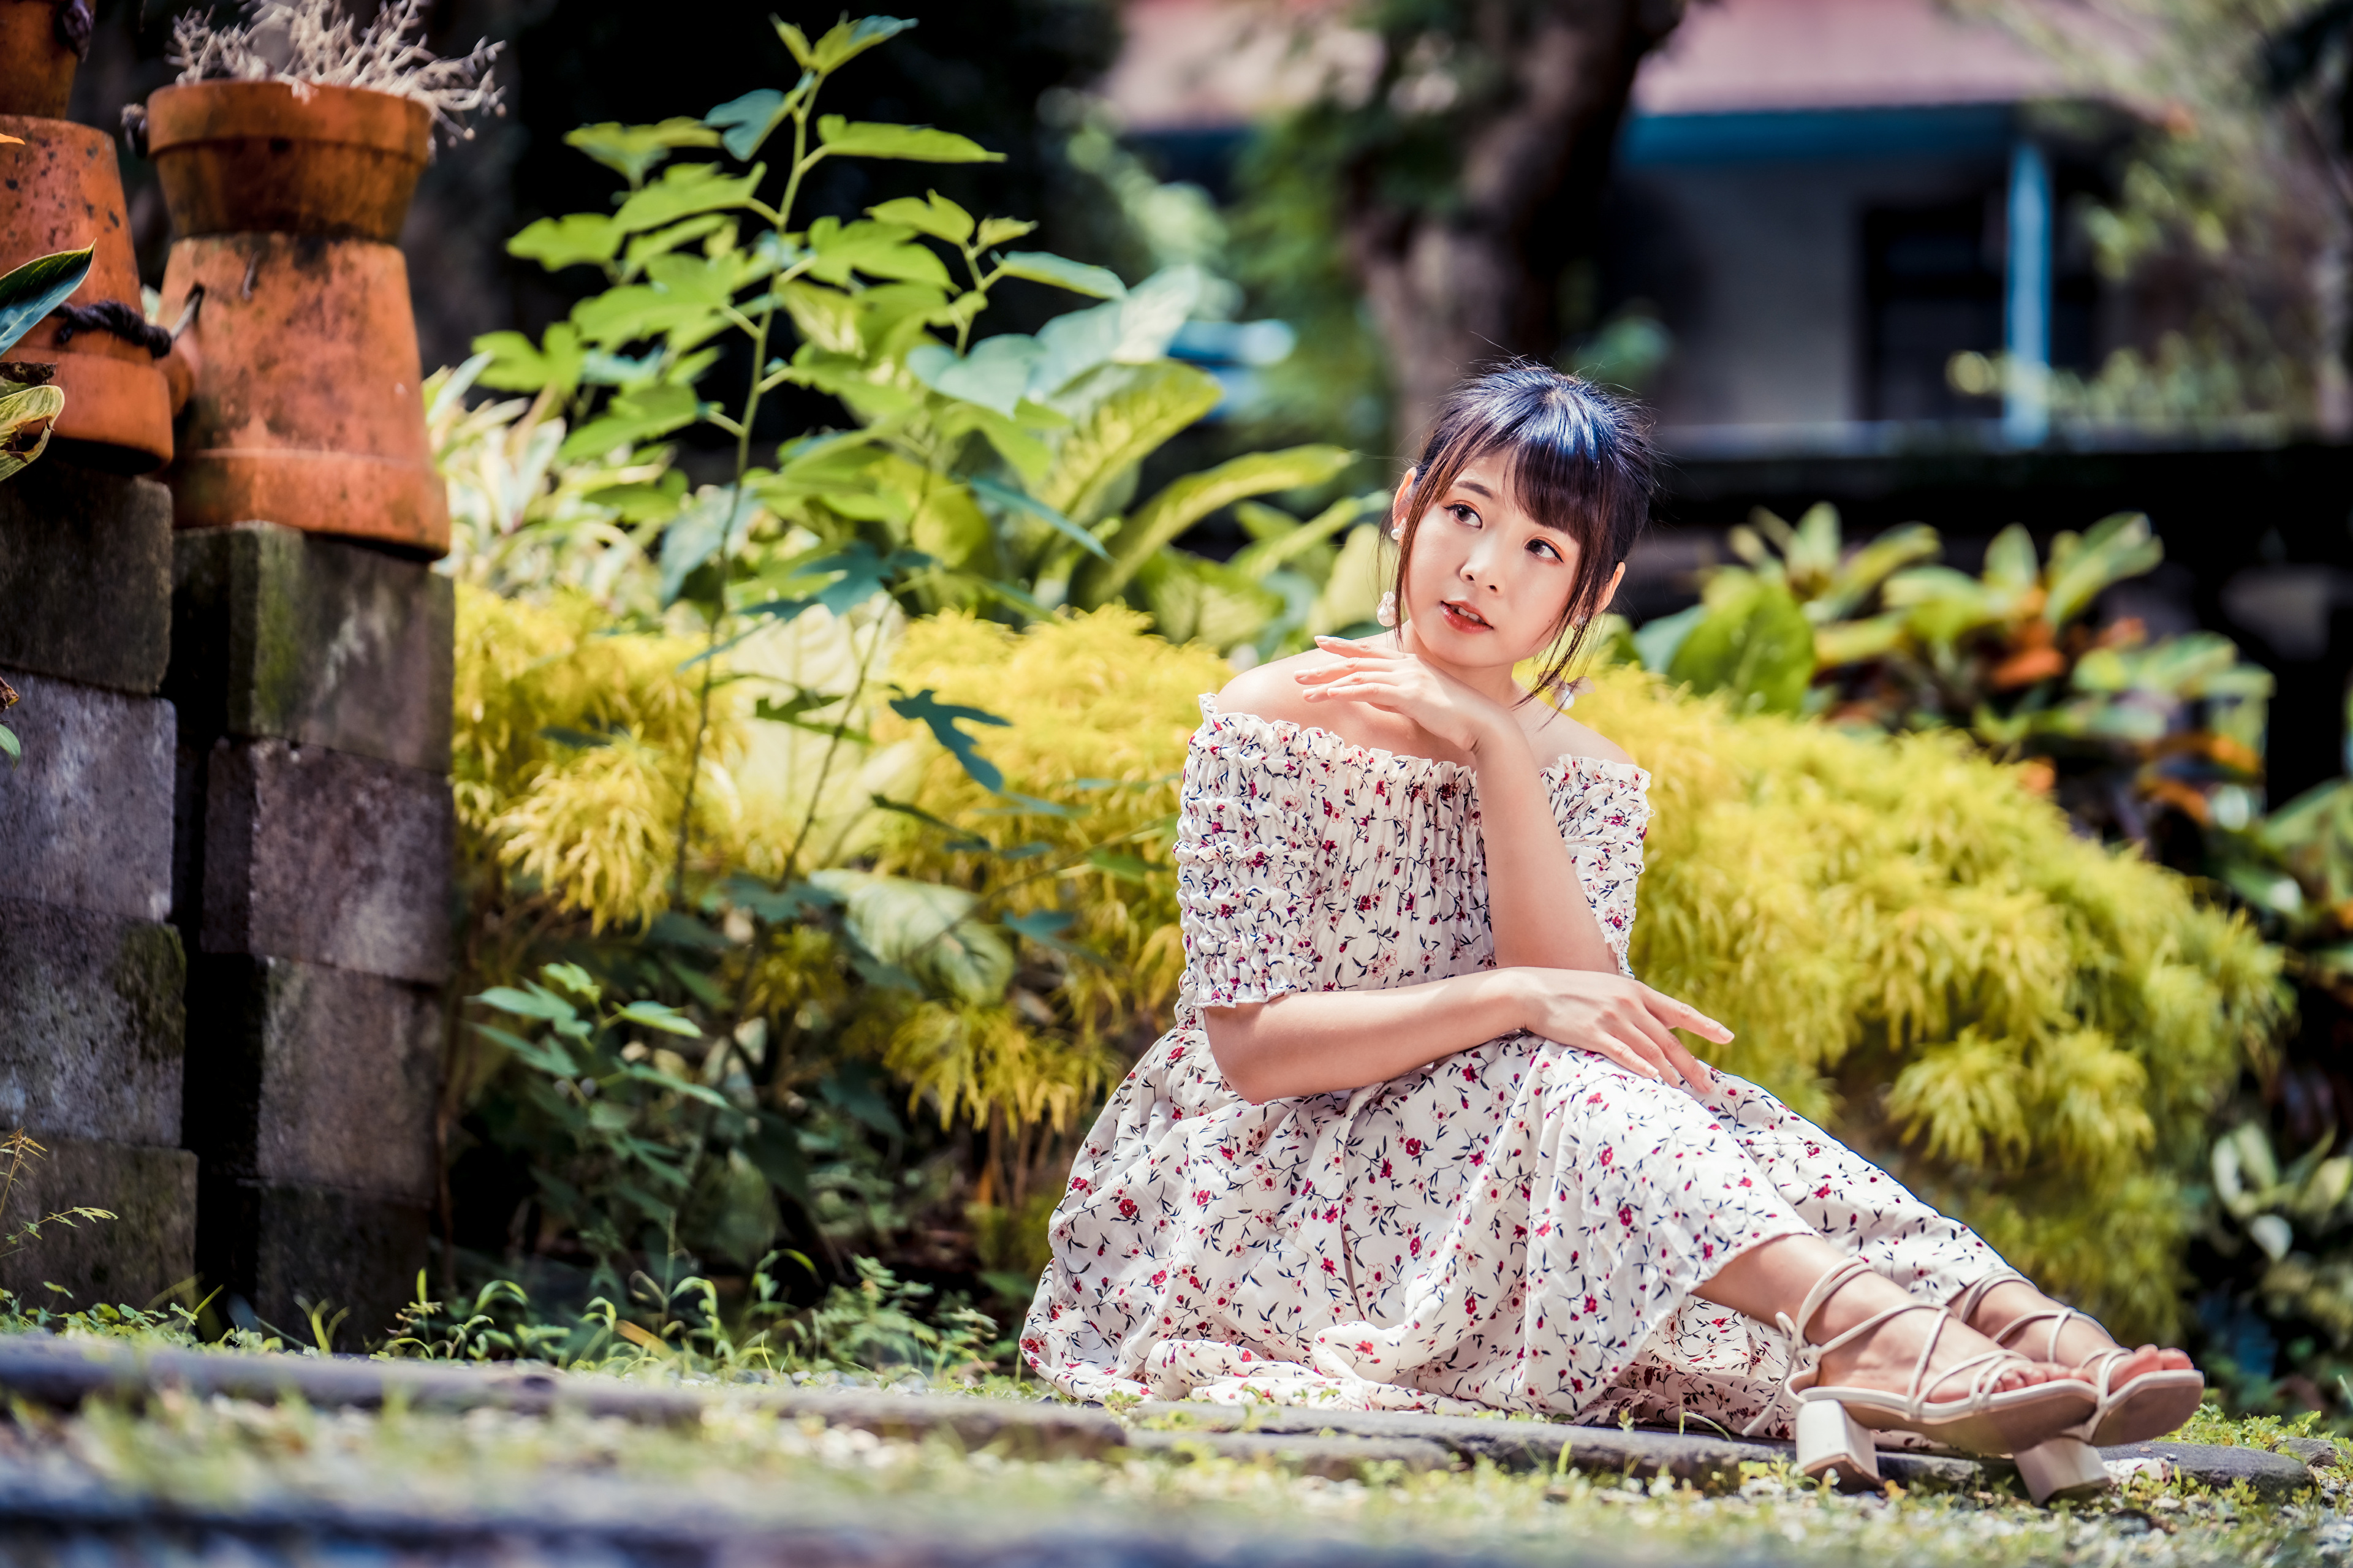 Asian Model Women Long Hair Brunette Depth Of Field Flower Dress Barefoot Sandal Sitting Bushes Plan 3840x2559